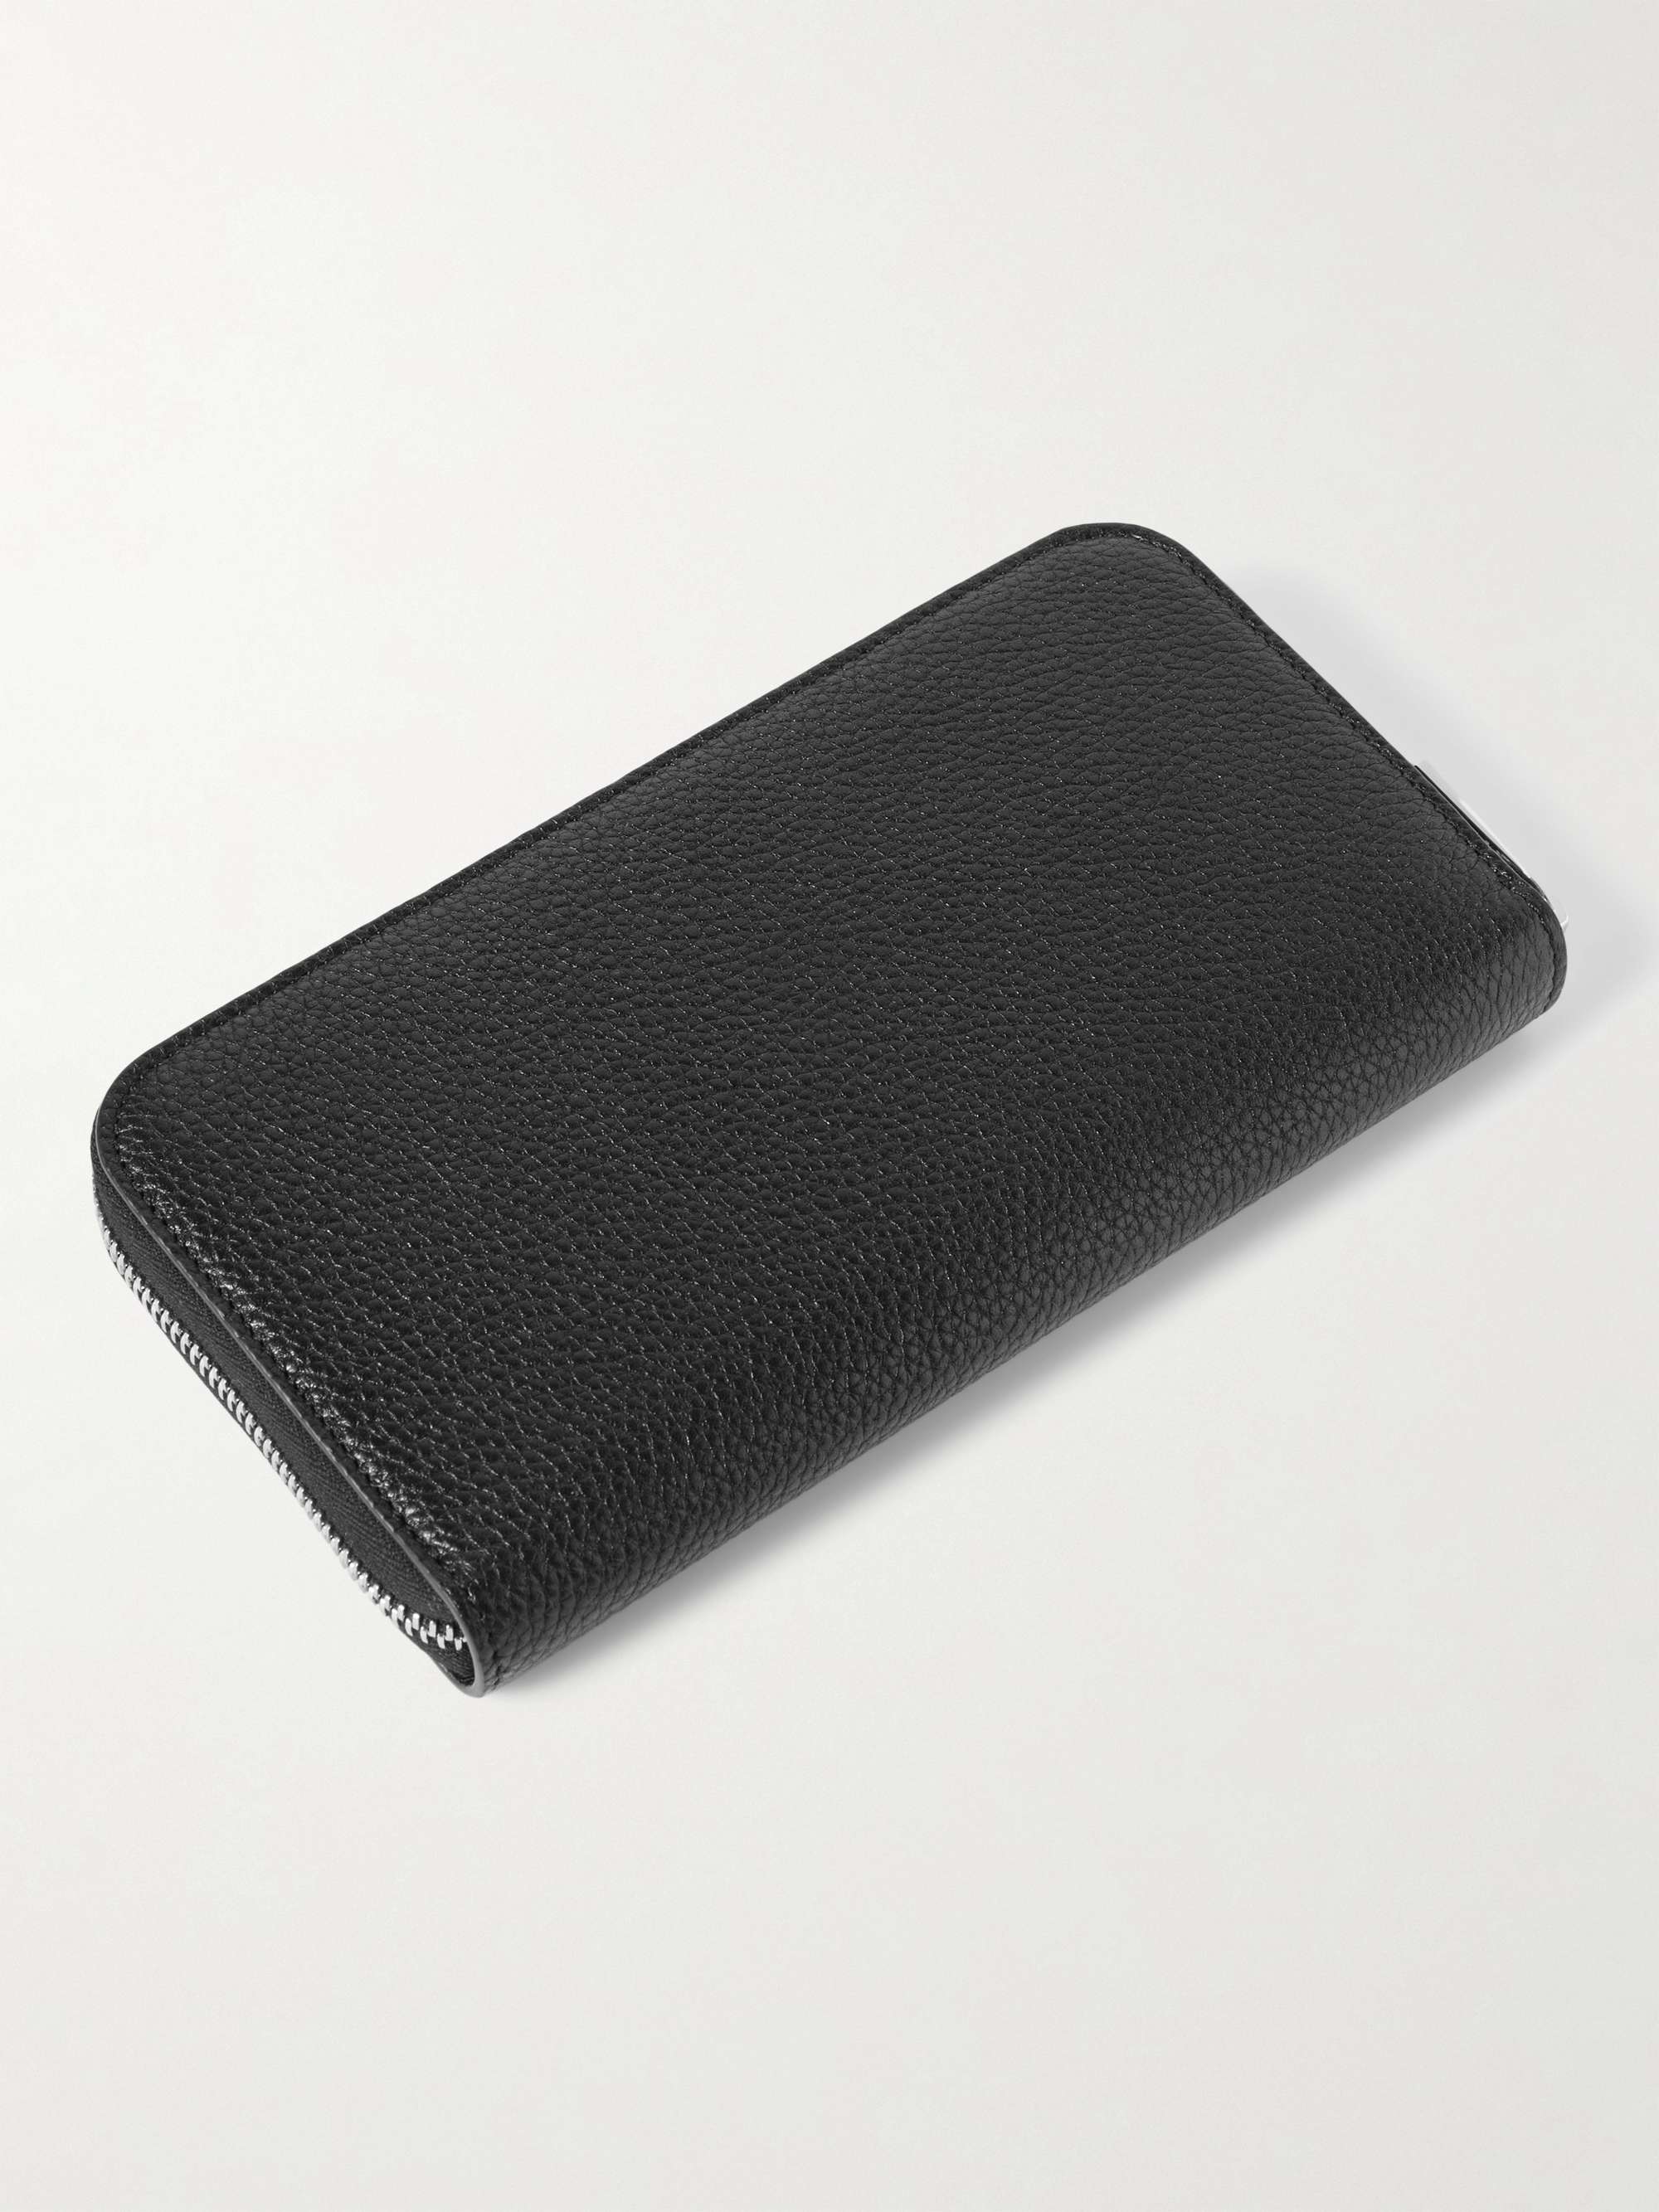 Black Full-Grain Leather Zip-Around Wallet | TOM FORD | MR PORTER